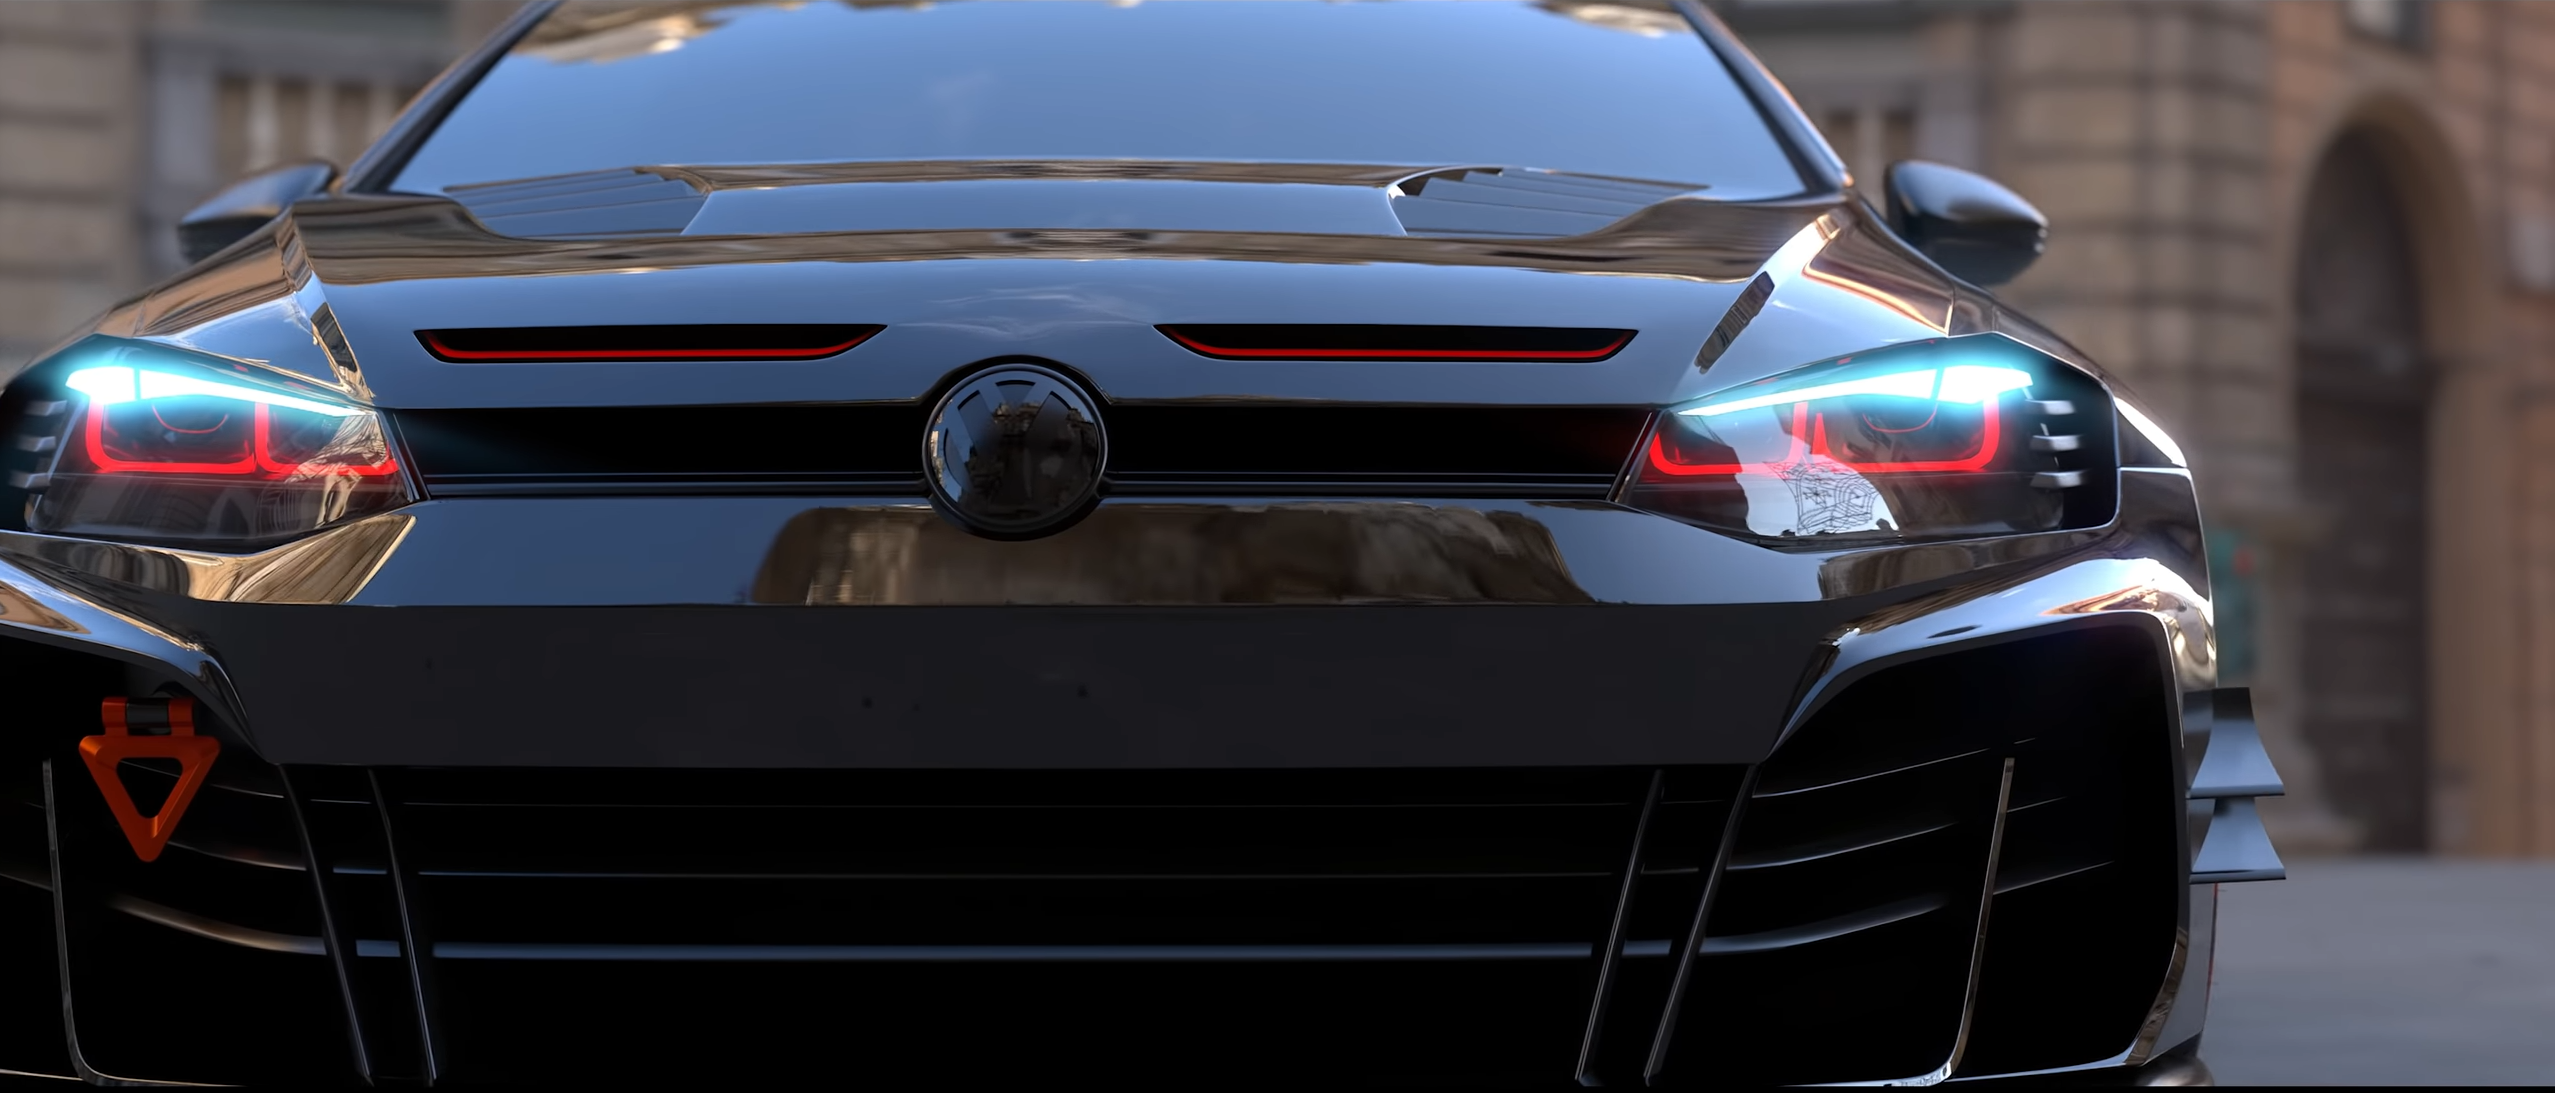 Bodykit Set für VW Golf 7 ABS Kunststoff - Finest Car Art - Der Bodykit  Profi, 667,50 €